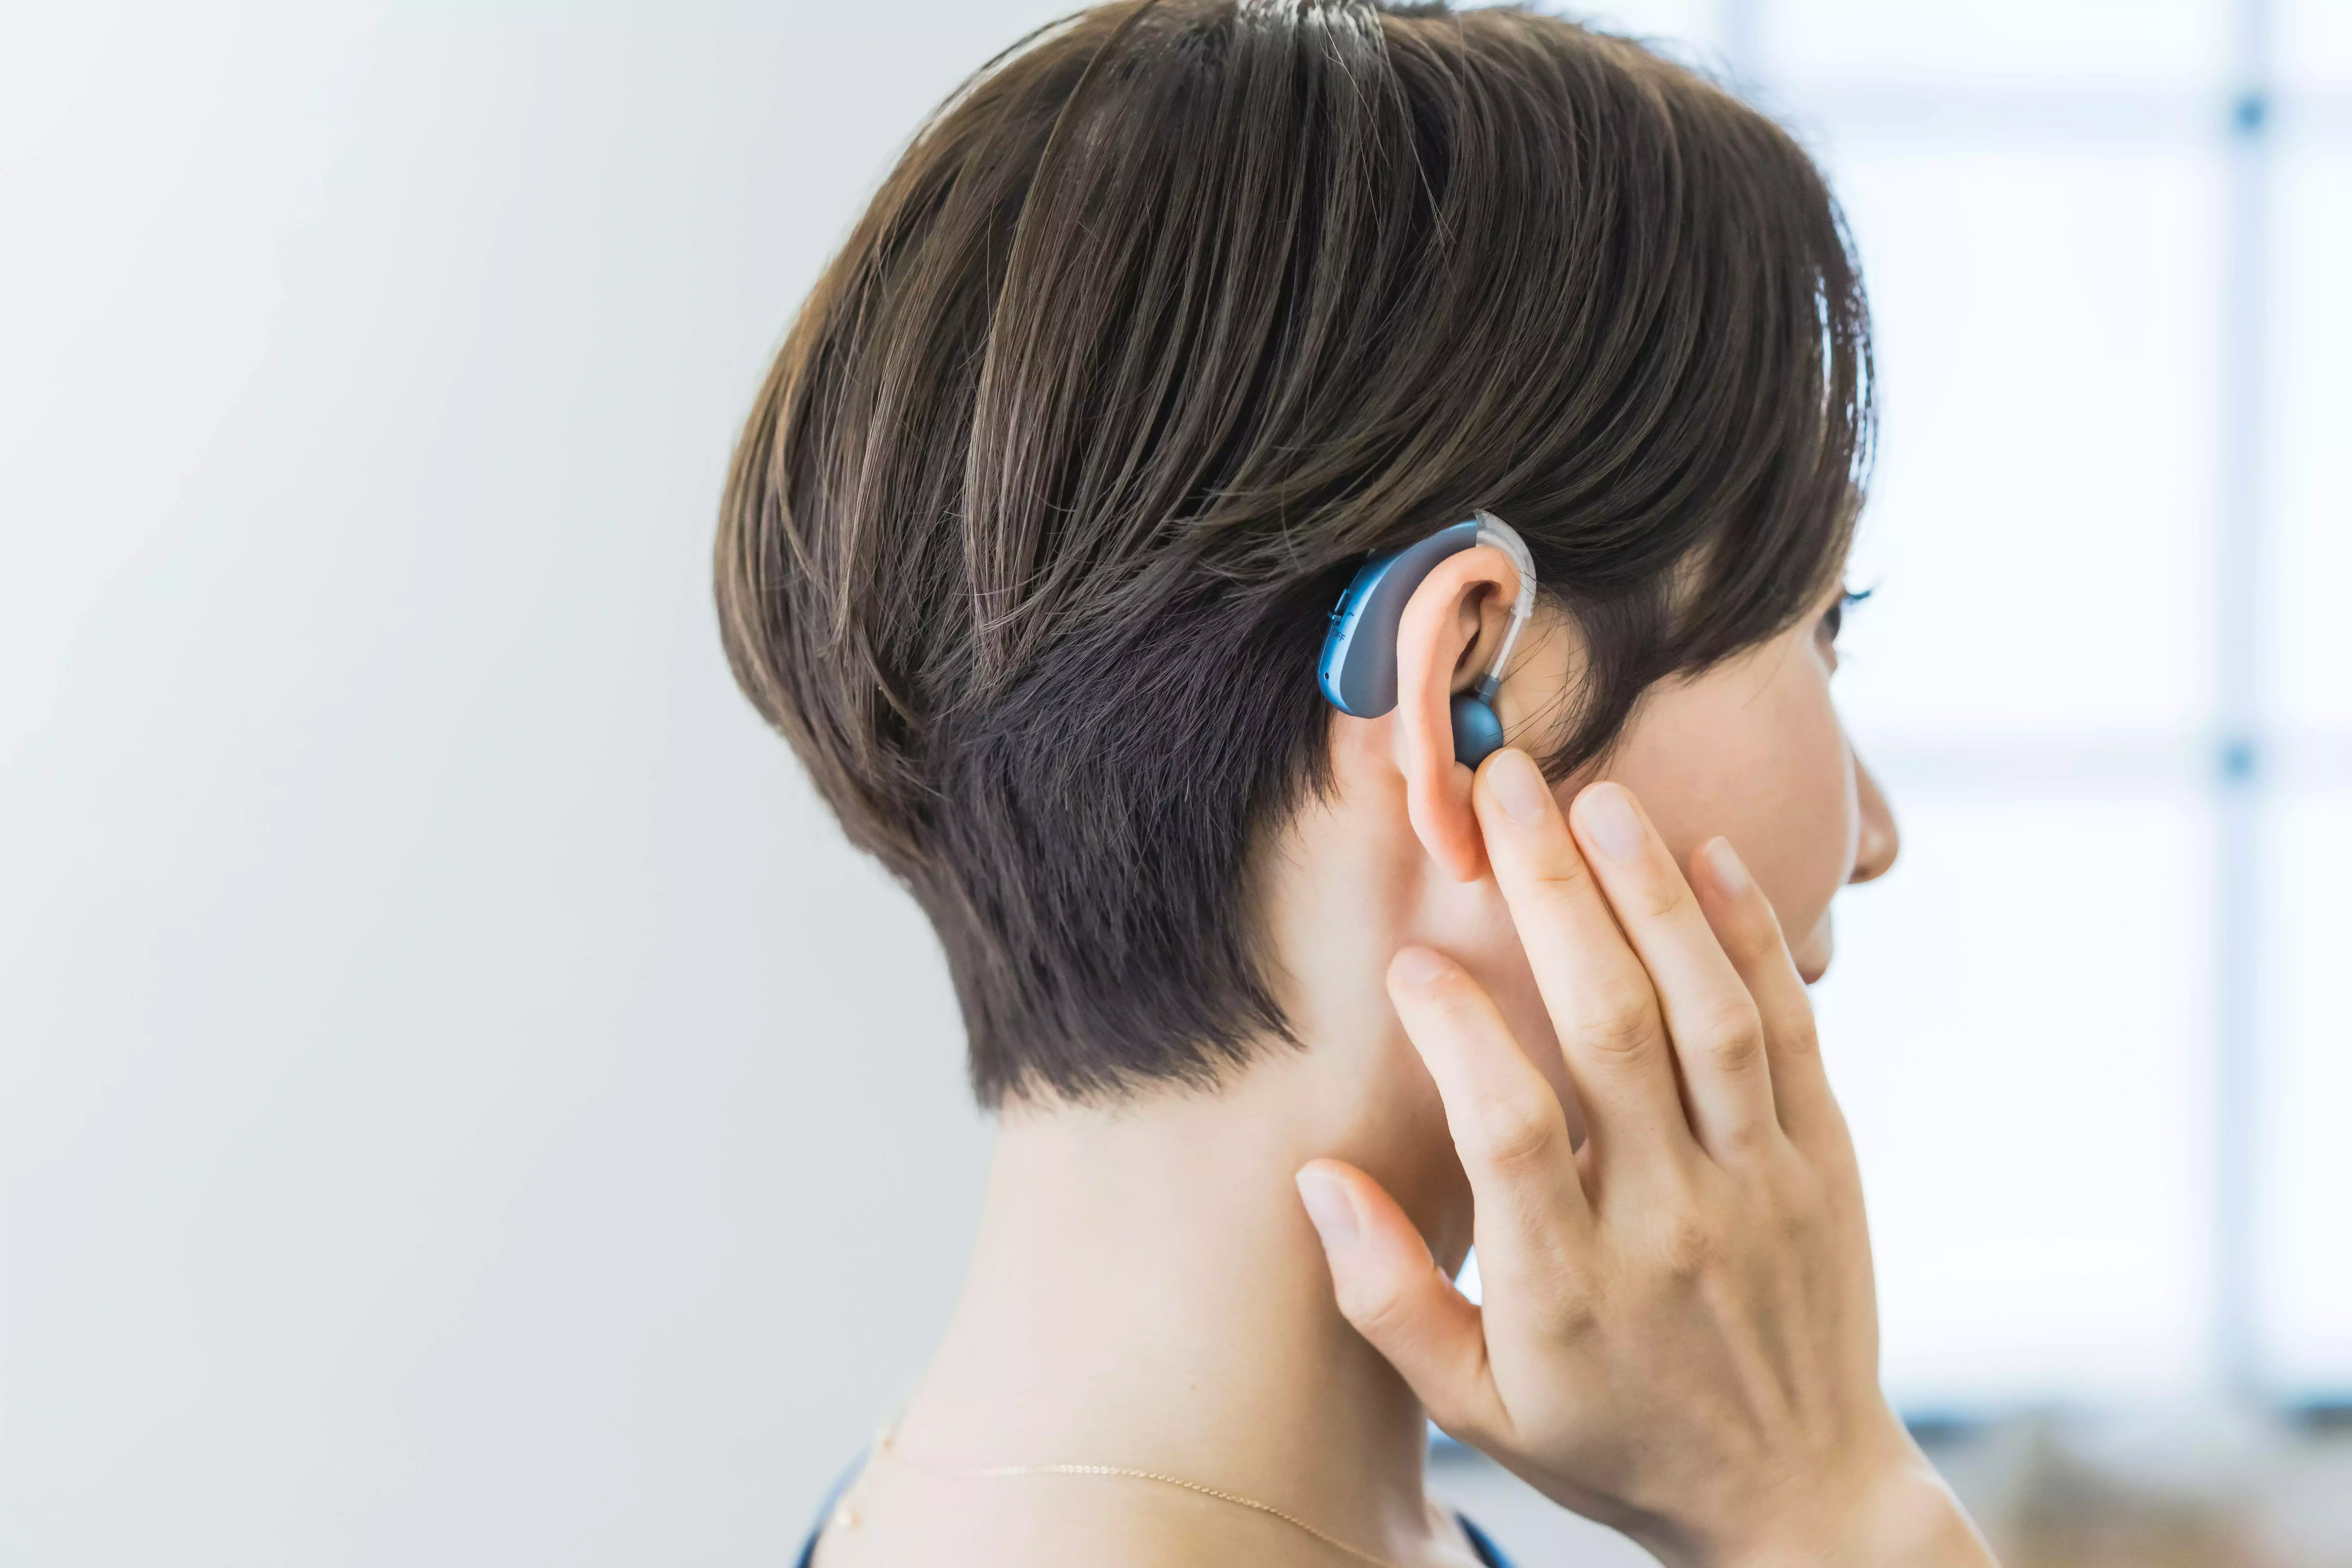 Les premiers signes de perte auditive à ne pas ignorer